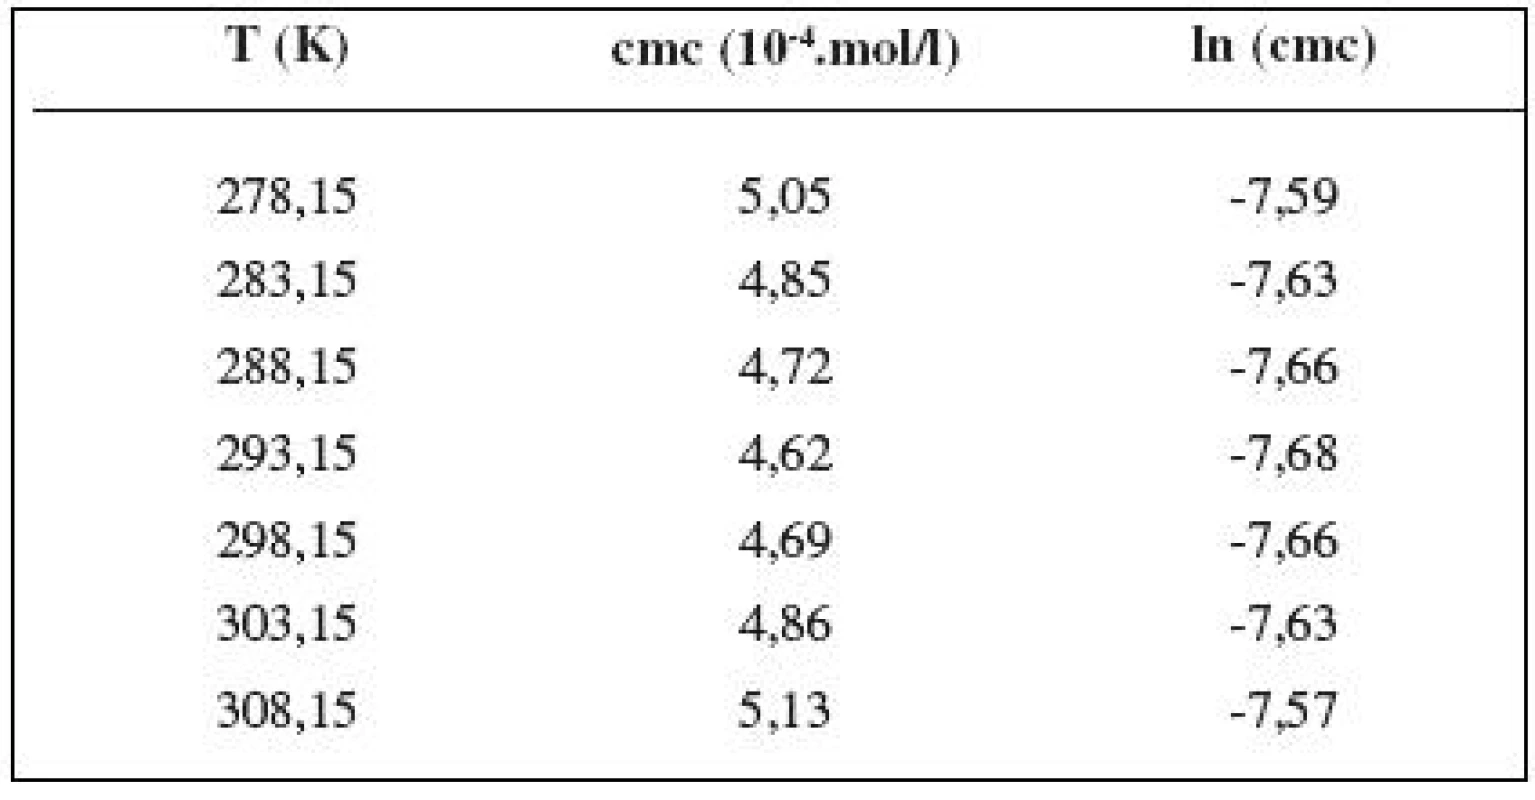 Zistené hodnoty cmc a ln (cmc) meranej látky v 0,2 mol/l roztoku NaCl

